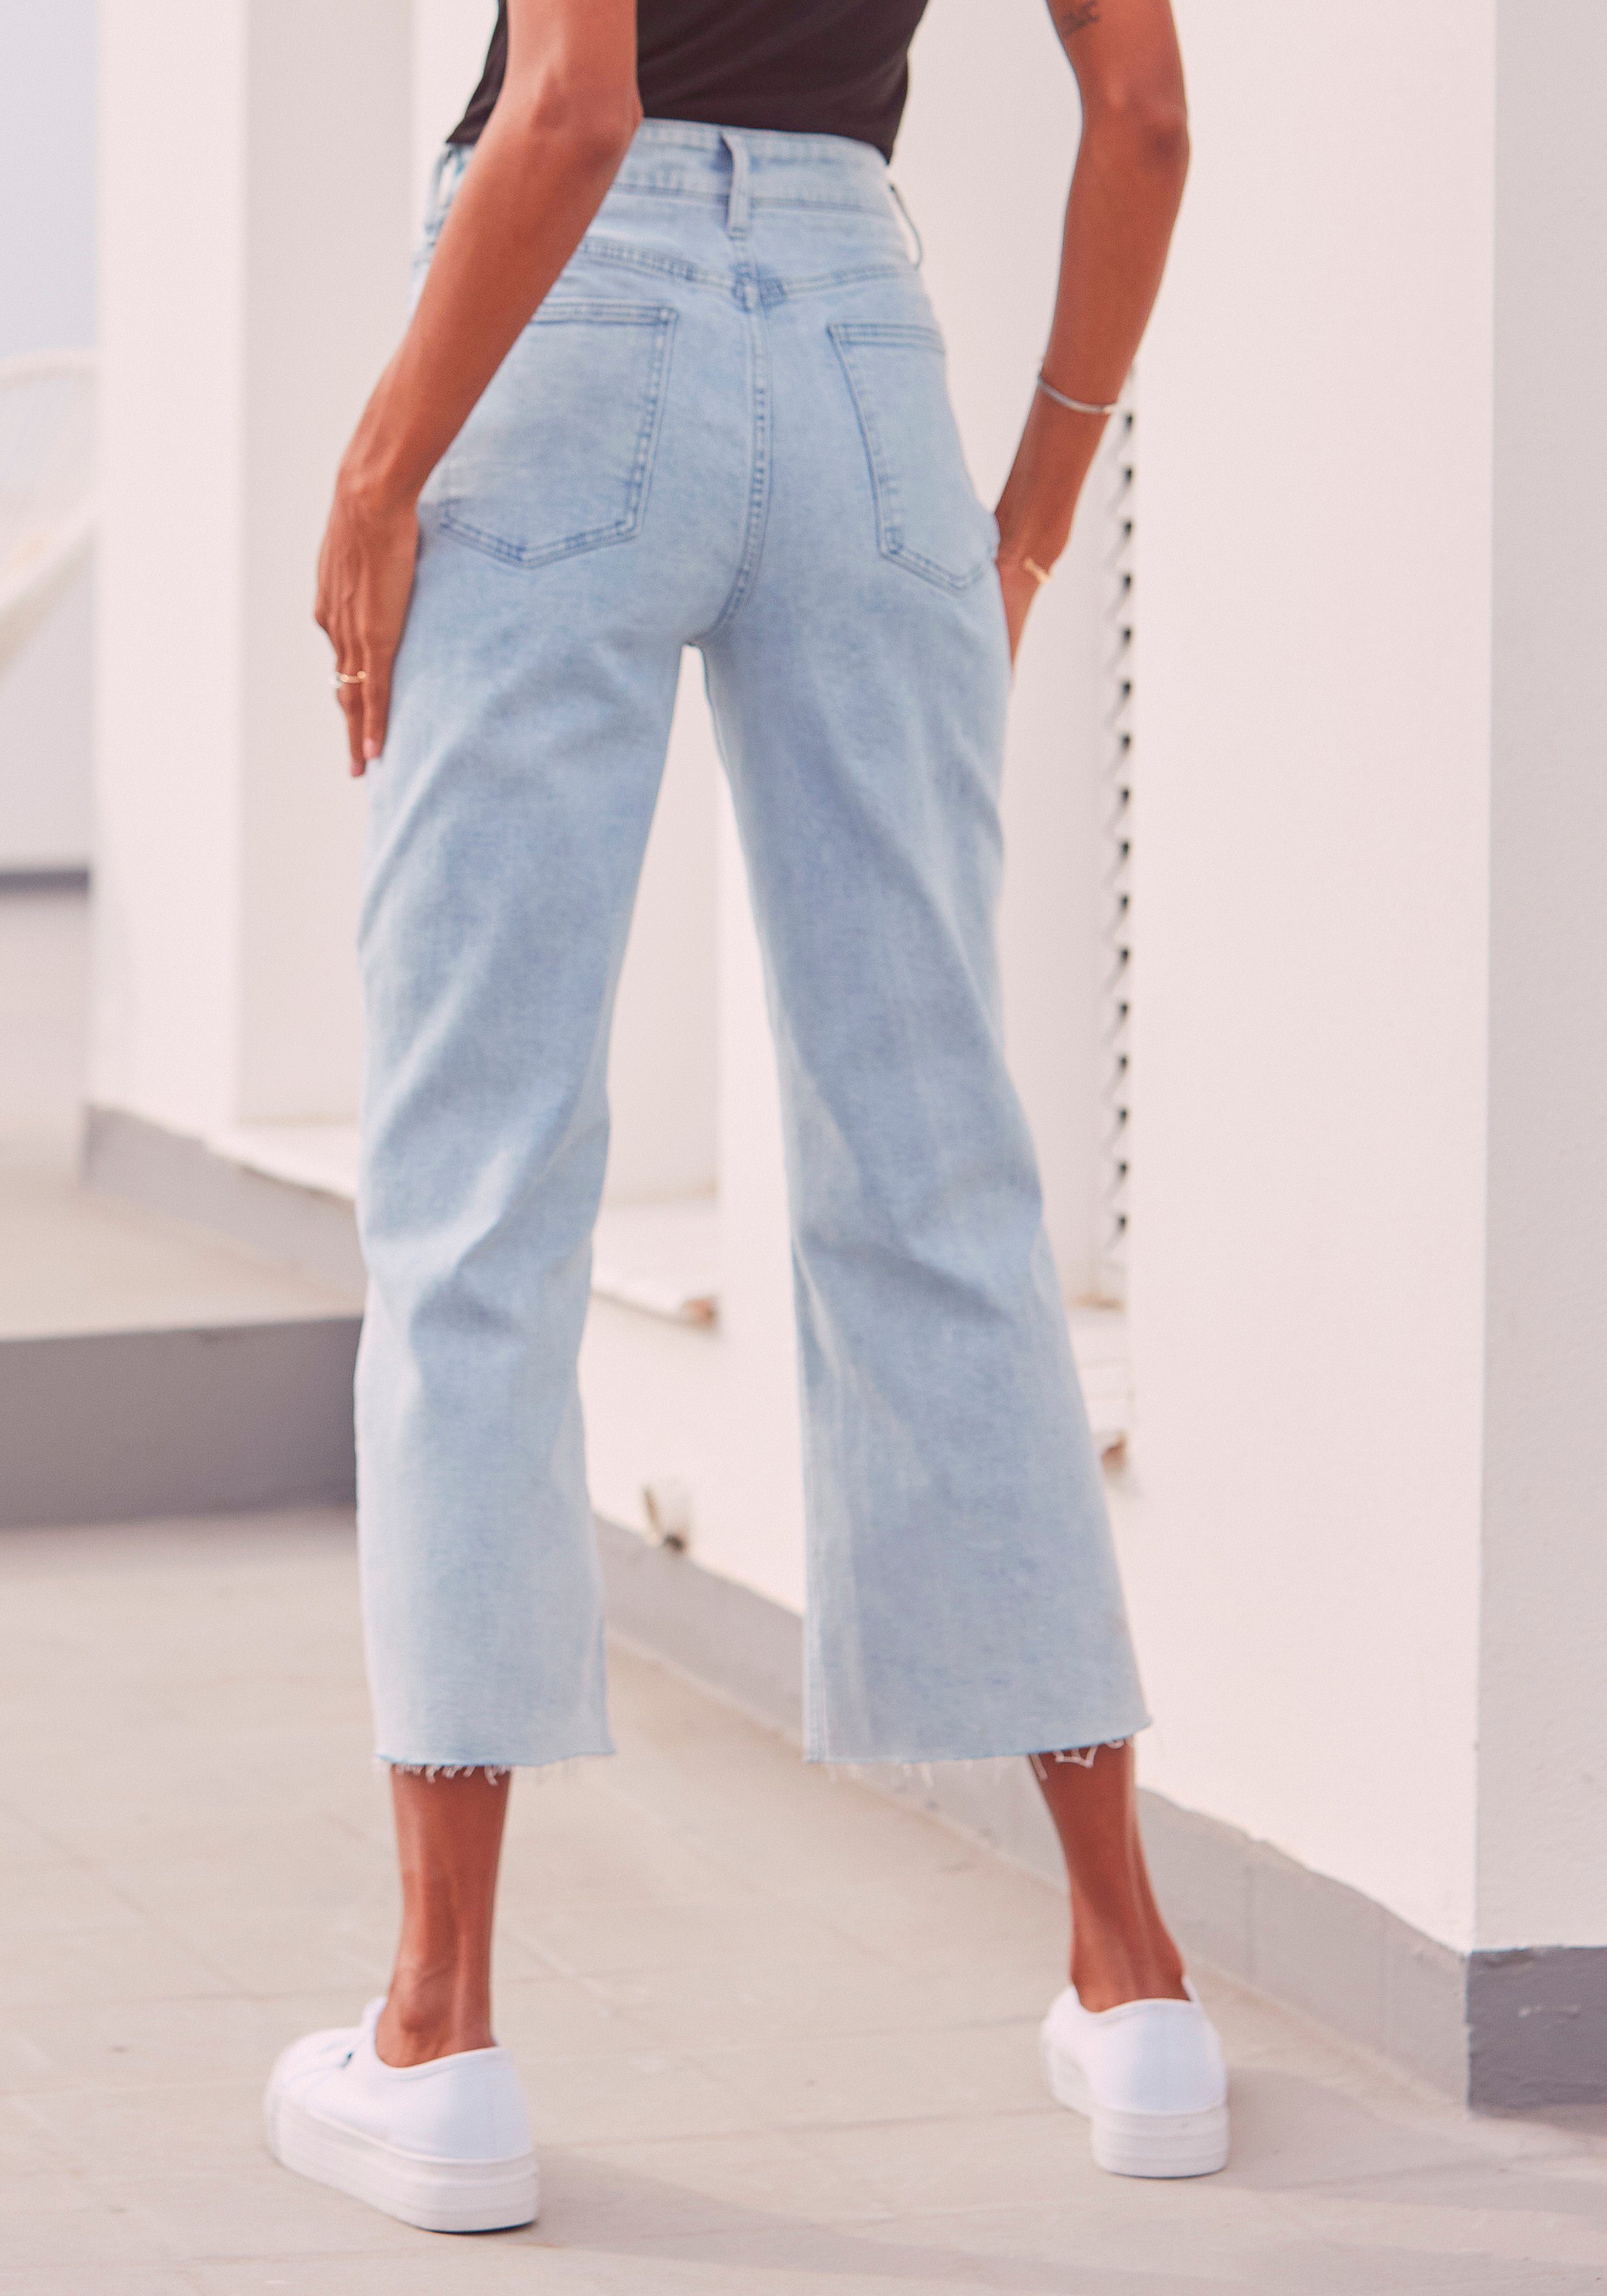 LASCANA 7/8-Jeans mit leicht ausgefransten hellblau-washed Beinabschlüssen